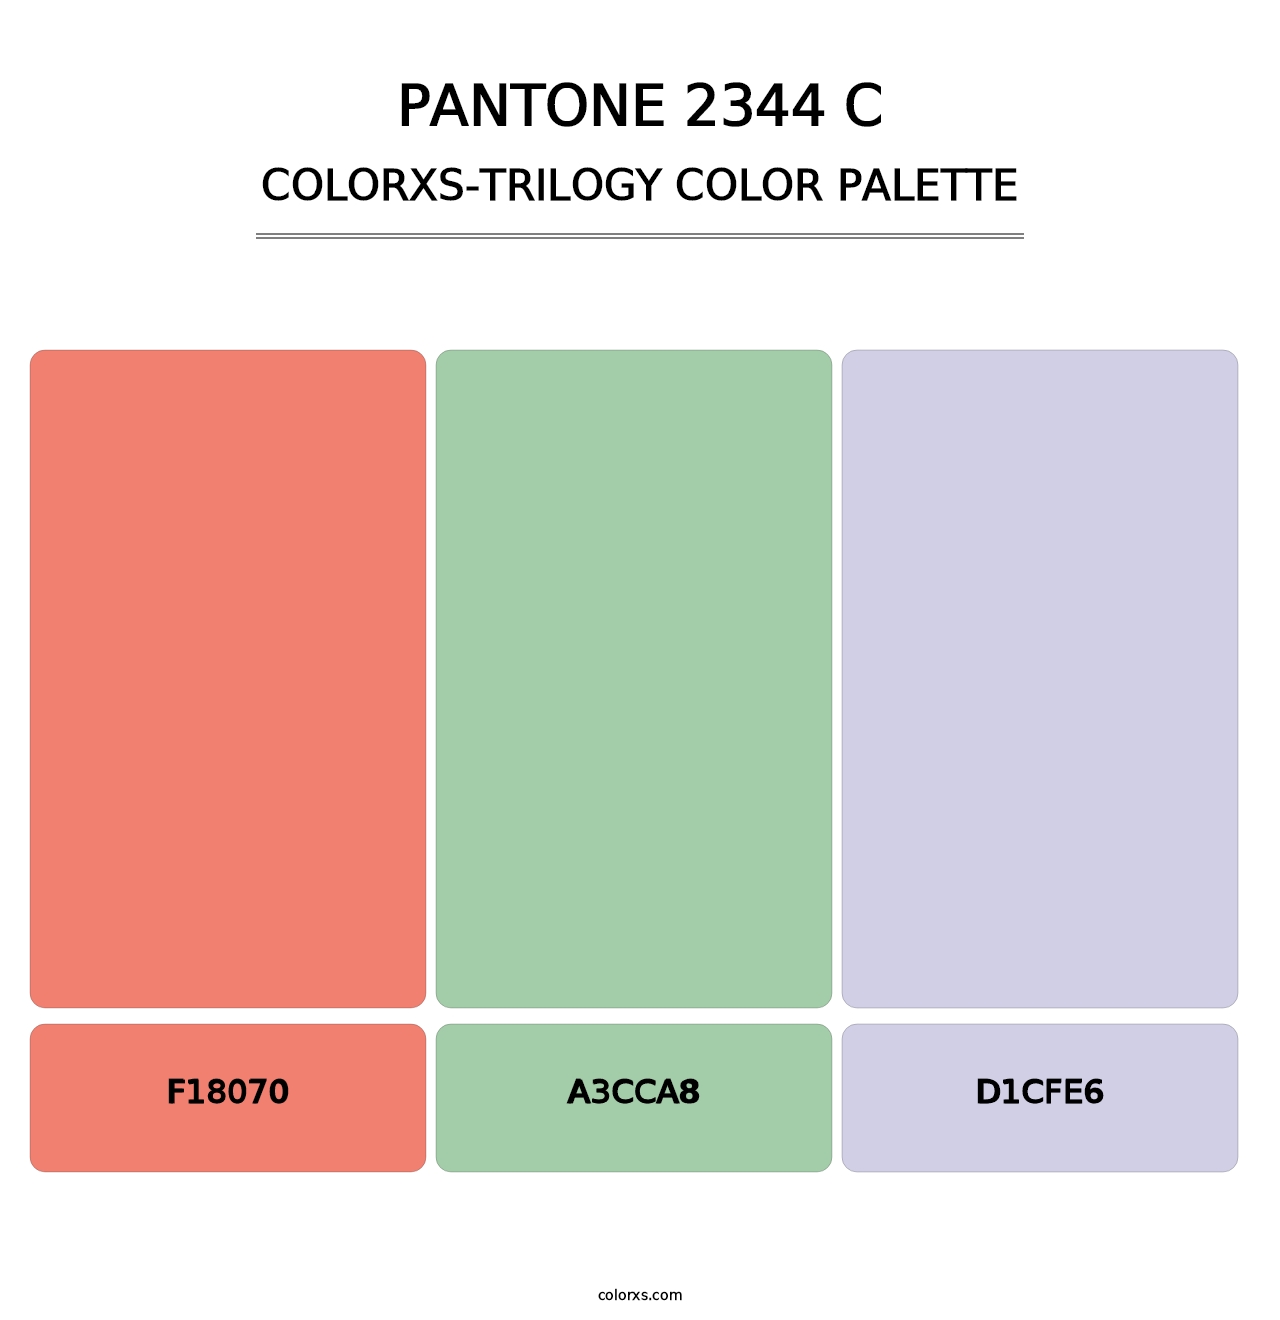 PANTONE 2344 C - Colorxs Trilogy Palette